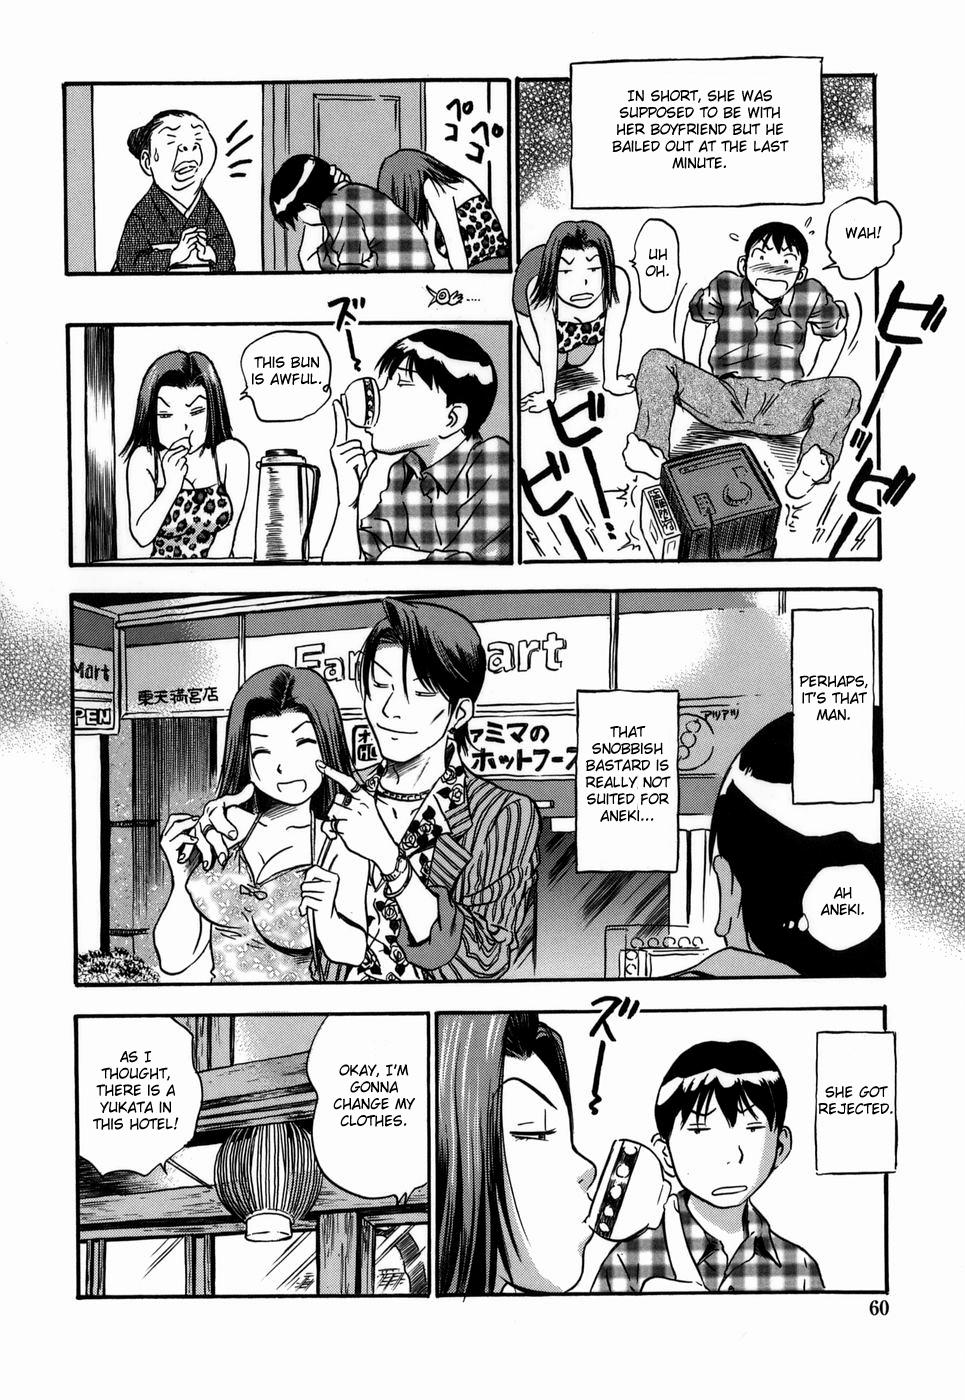 Three Some Aneki's Broken Hearted Trip Boyfriend - Page 4